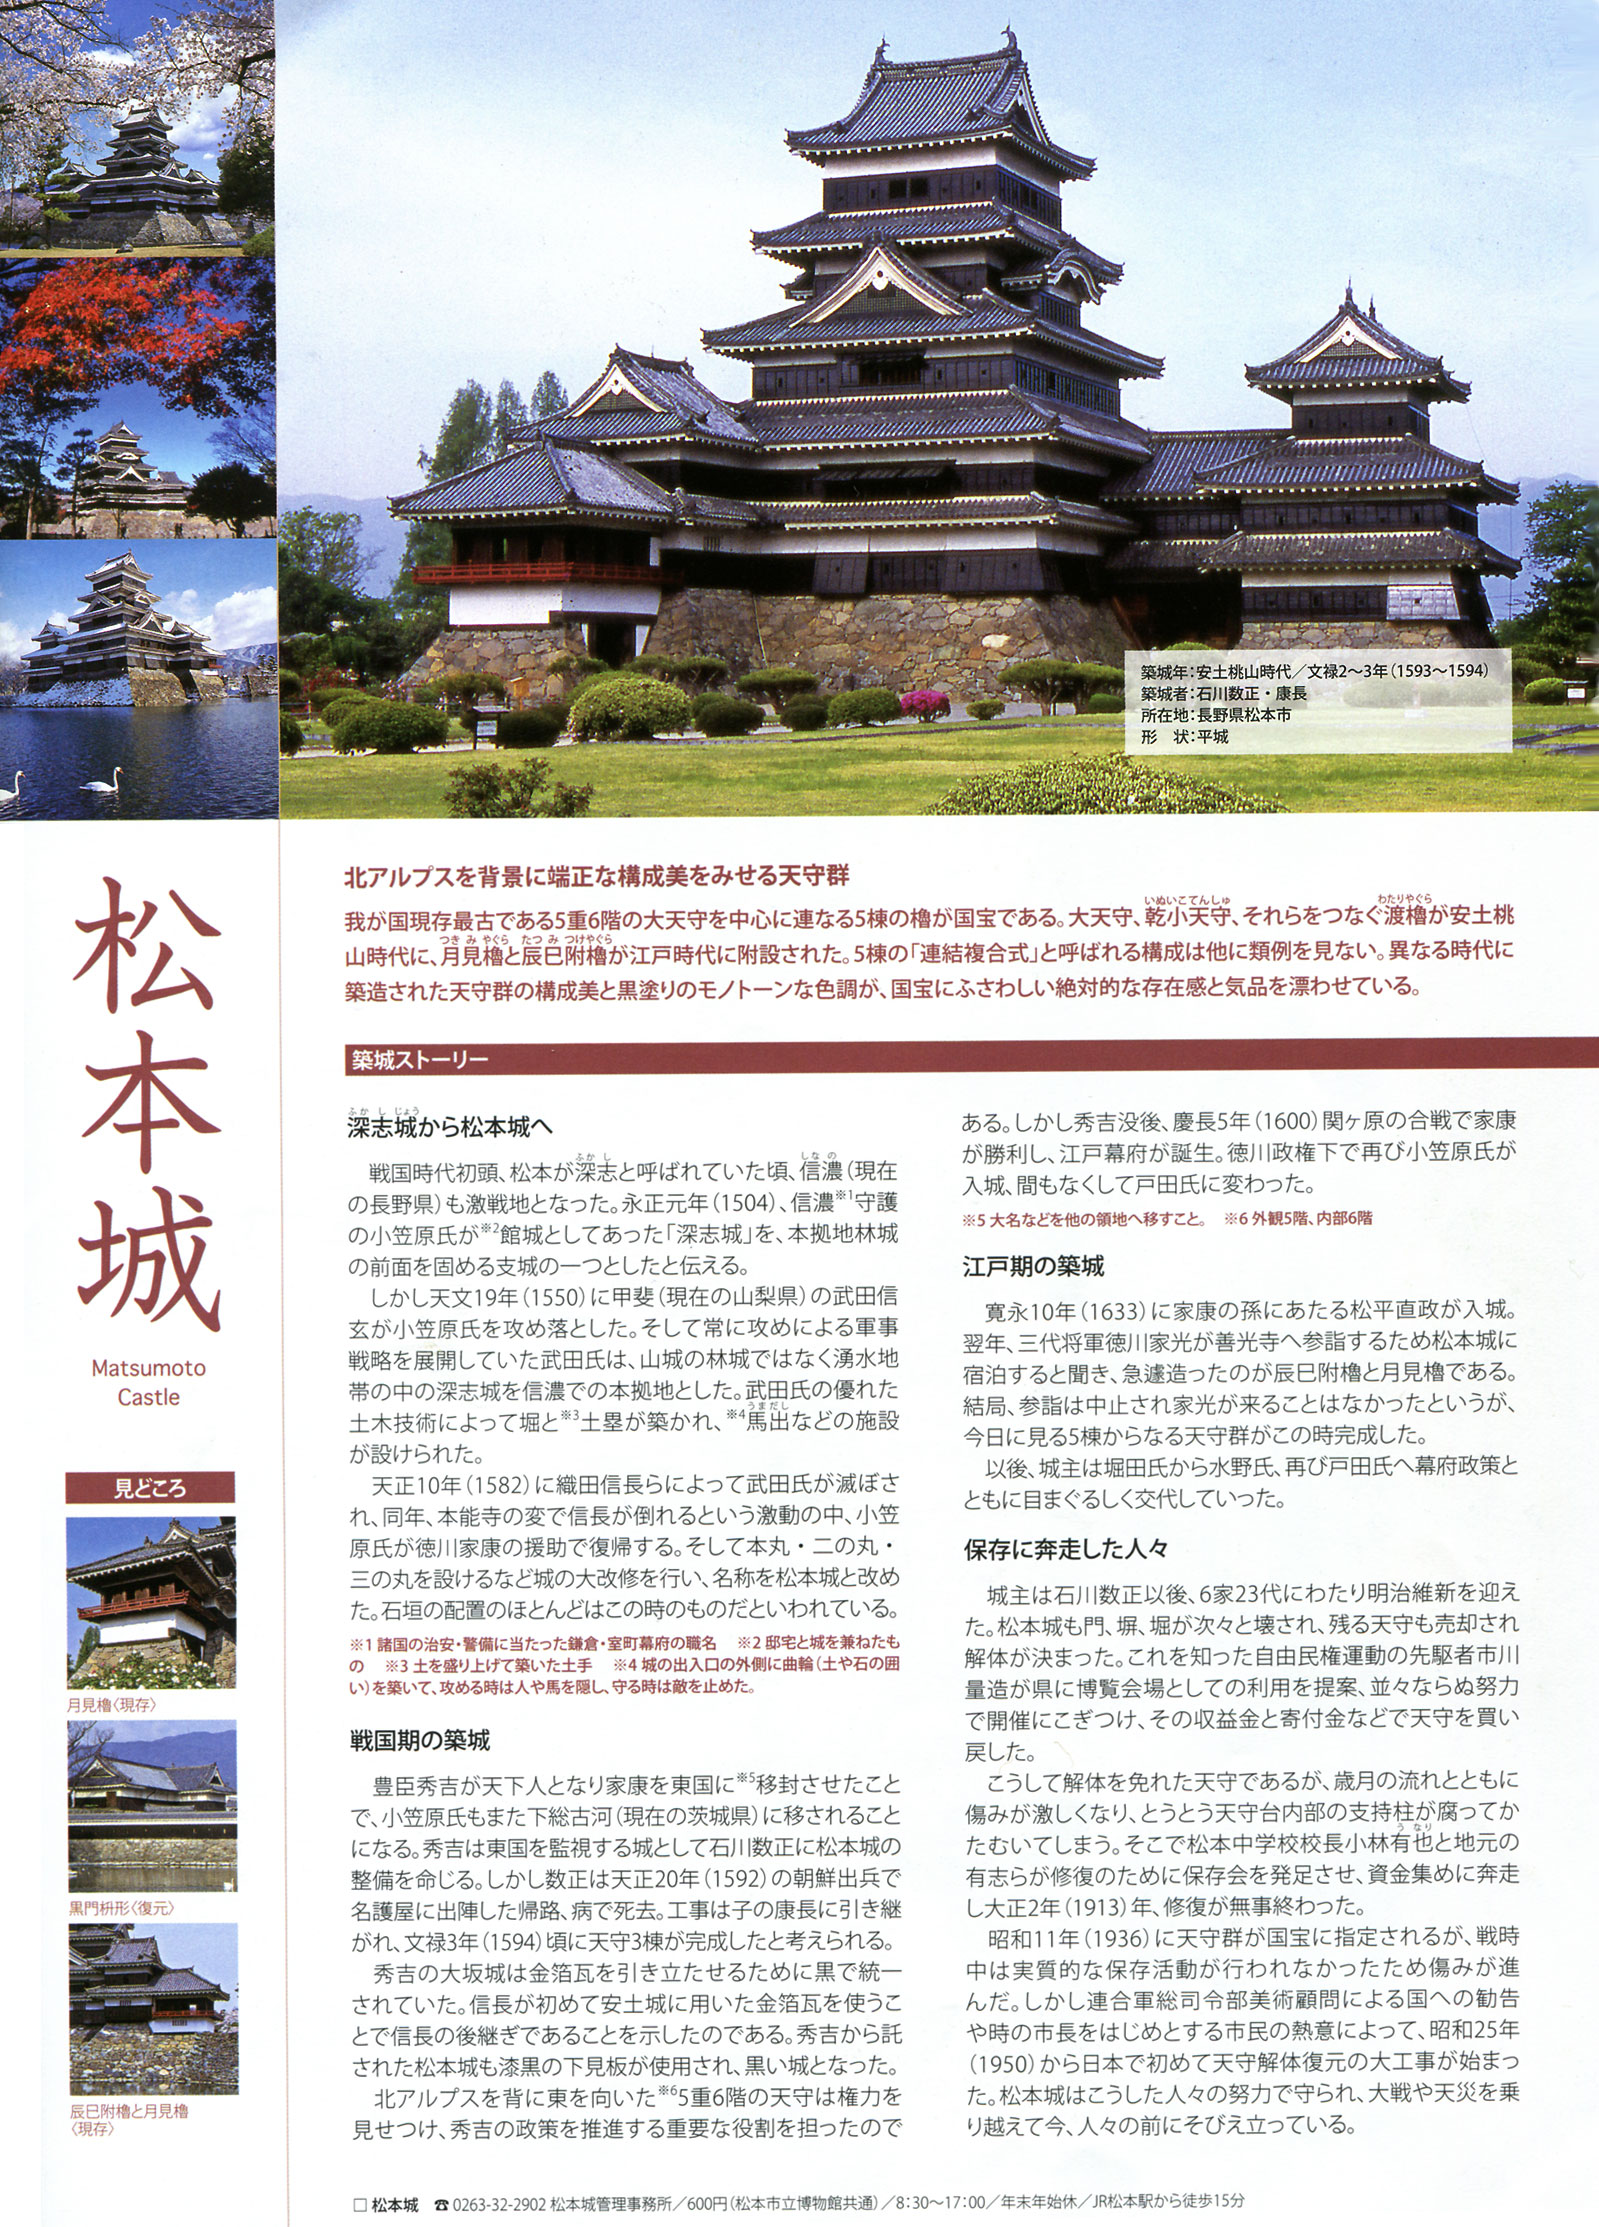 松本城 築城の歴史